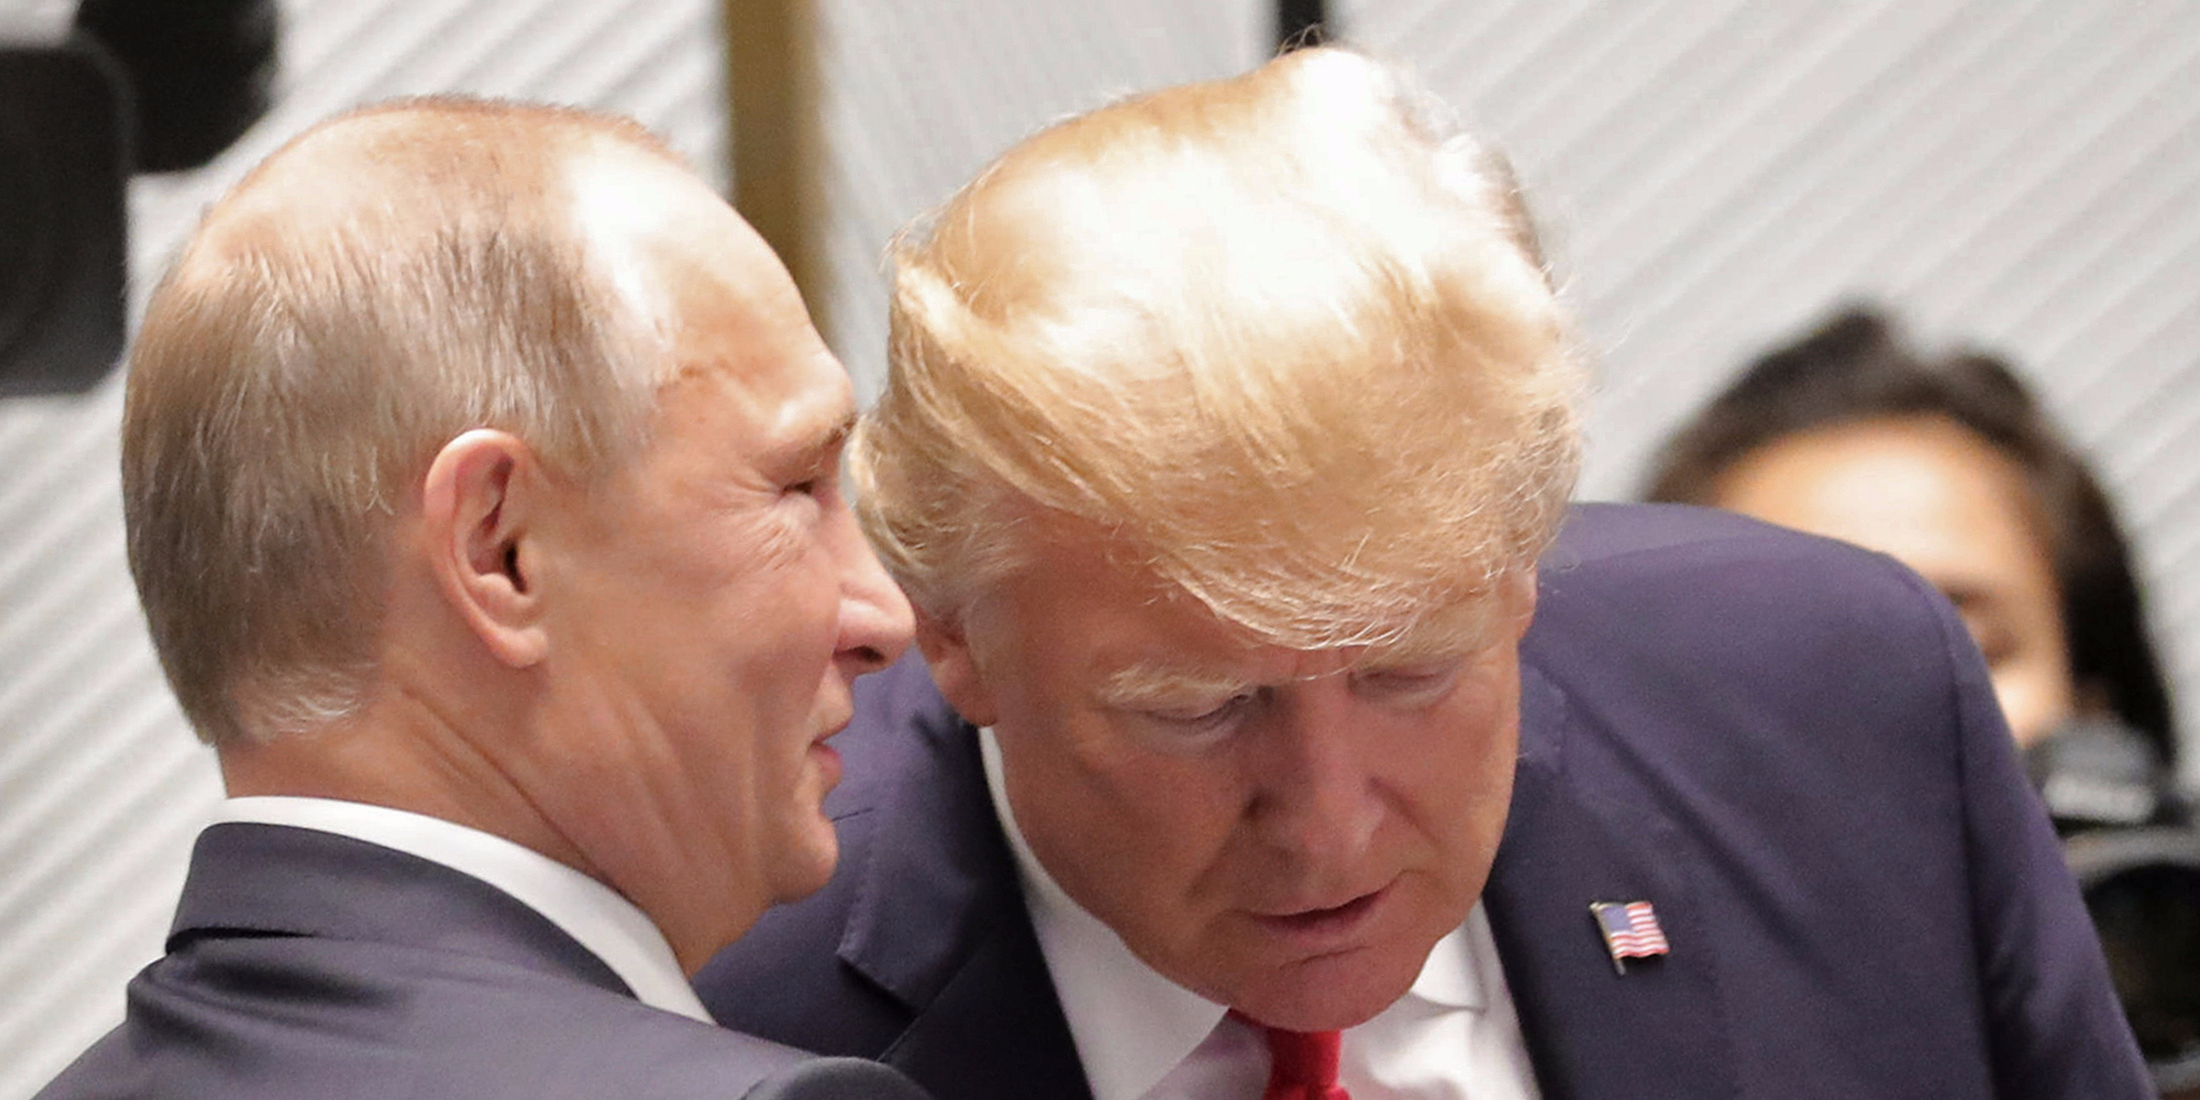 Vladimir Poetin met Donald Trump, toen nog president van de VS was. Foto: Thomson Reuters.